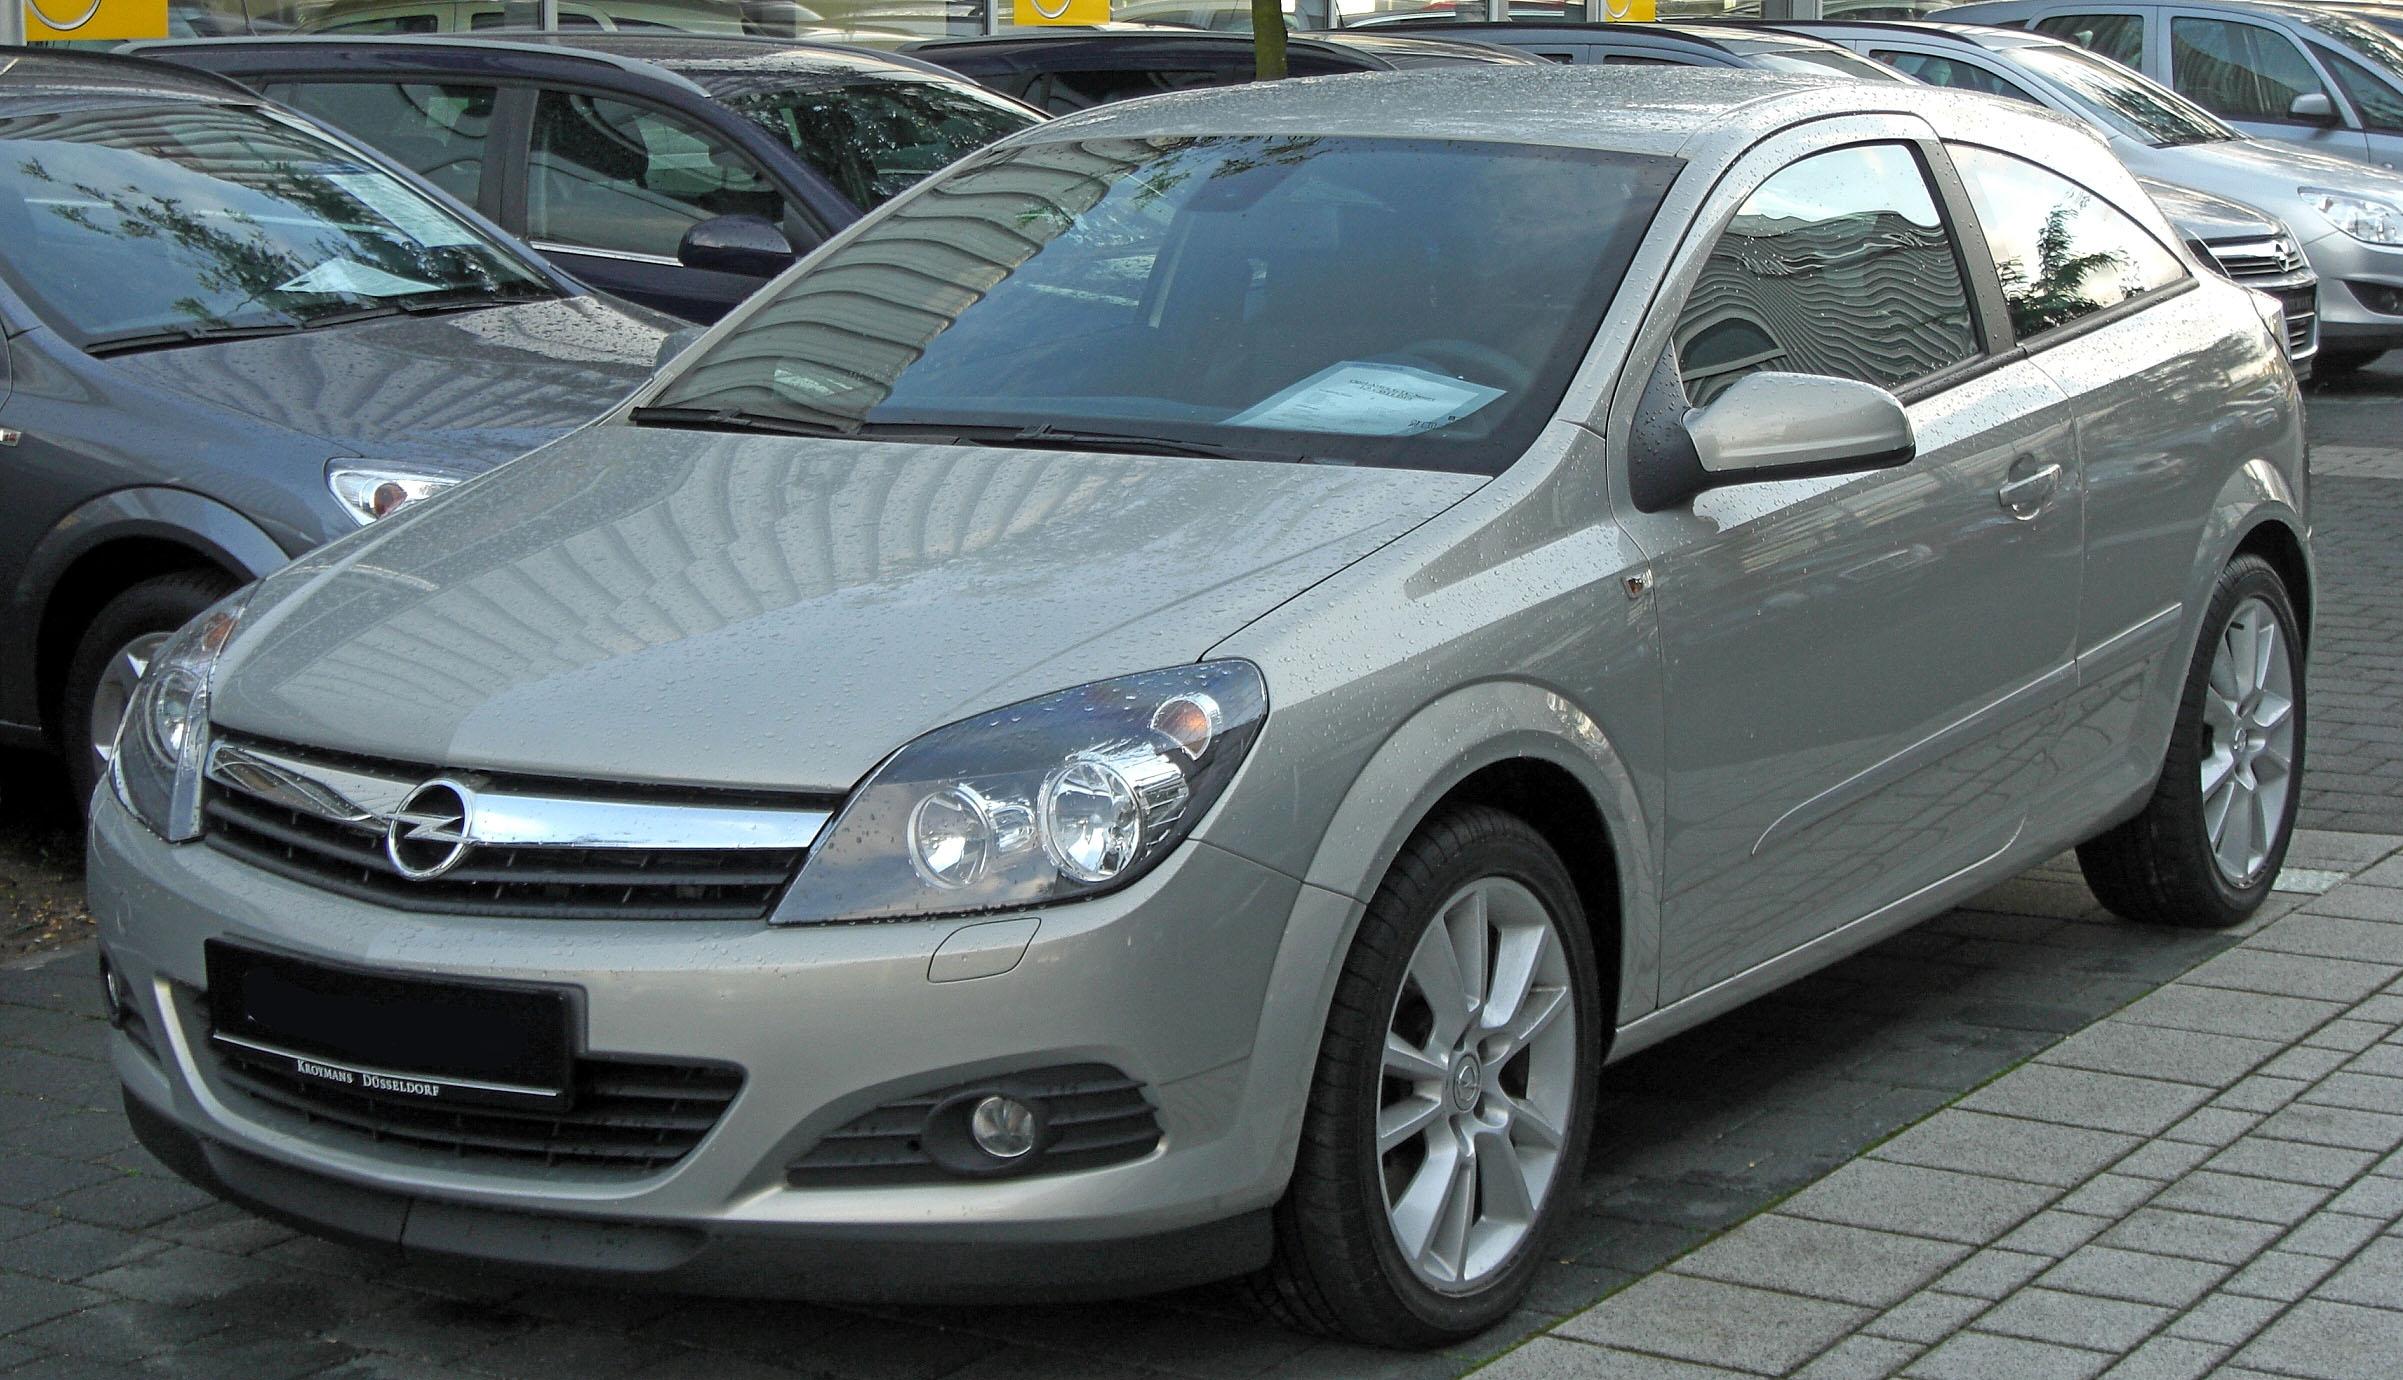 File:Opel Astra H GTC rear 20100706.jpg - Wikimedia Commons